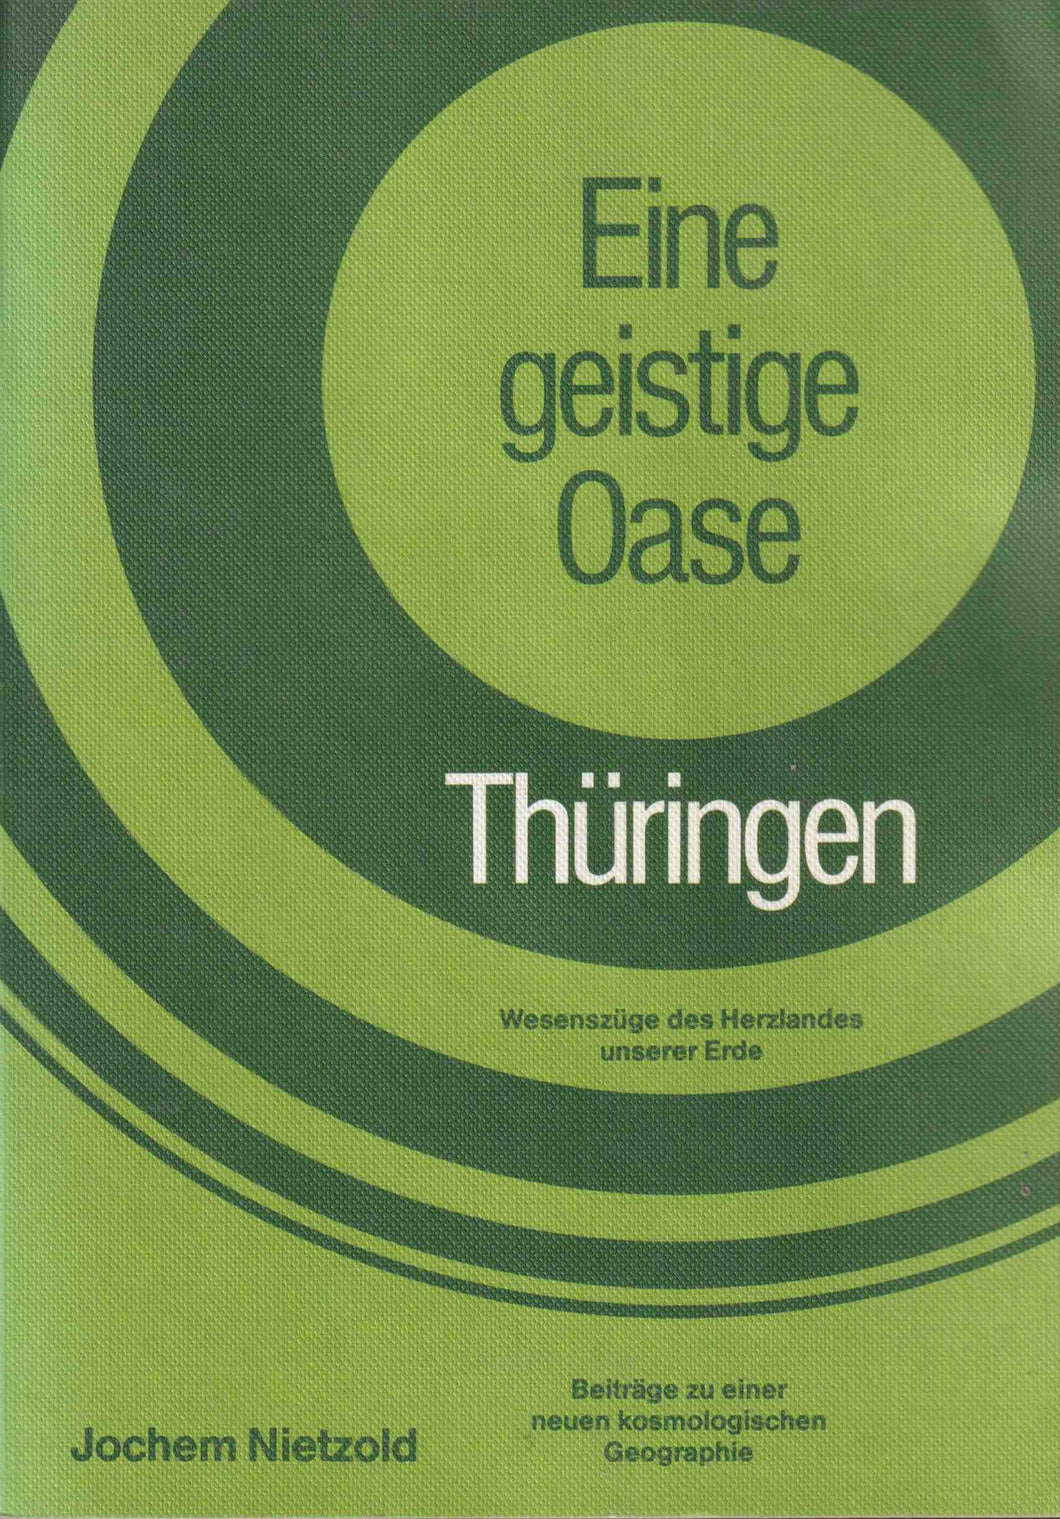 Eine geistige Oase - Thüringen